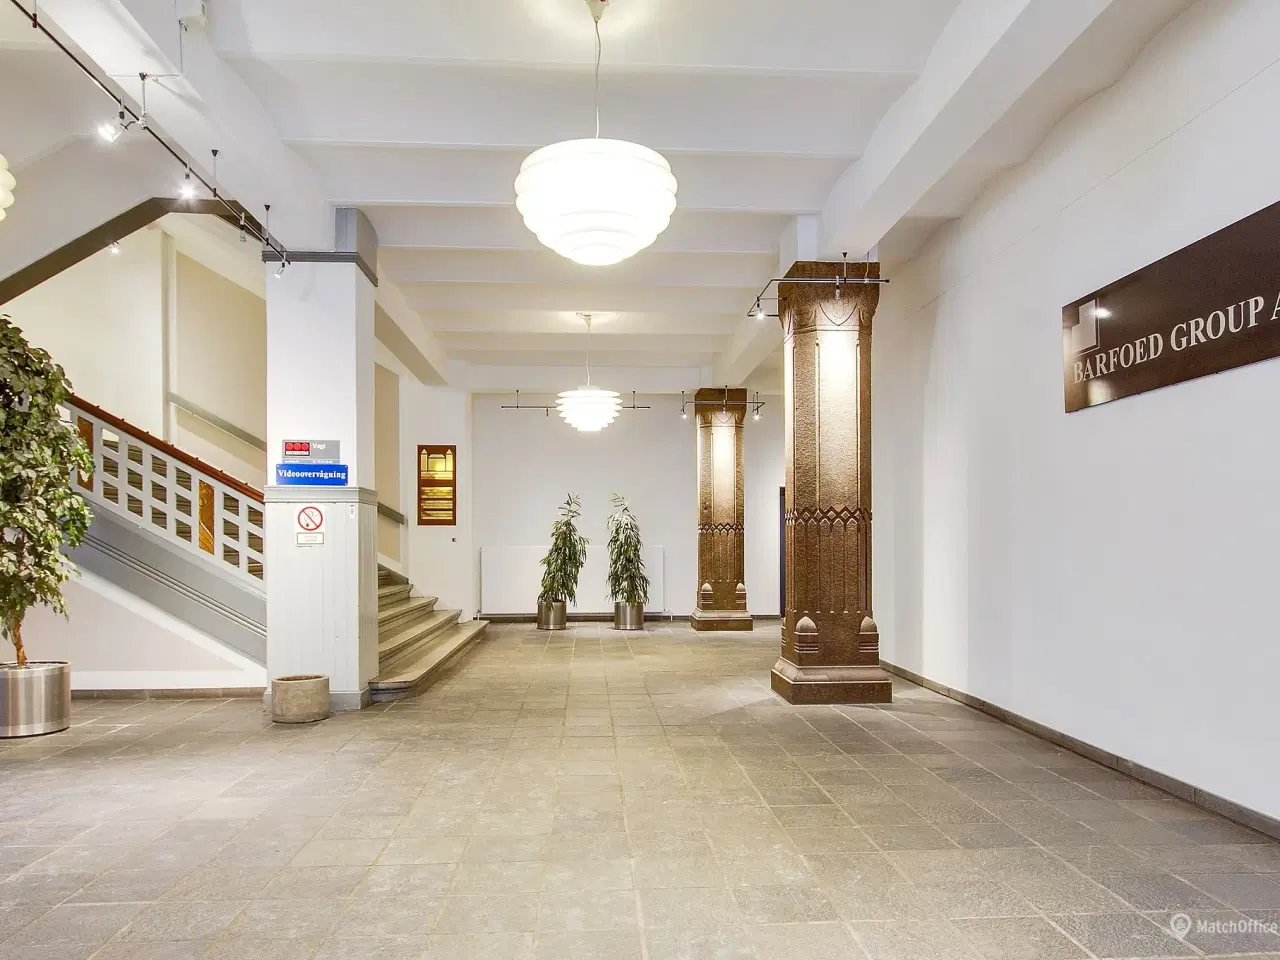 Billede 13 - 339 m² storrumskontor med flere kontorer og mødelokaler udlejes i Kongensgade i Odense City